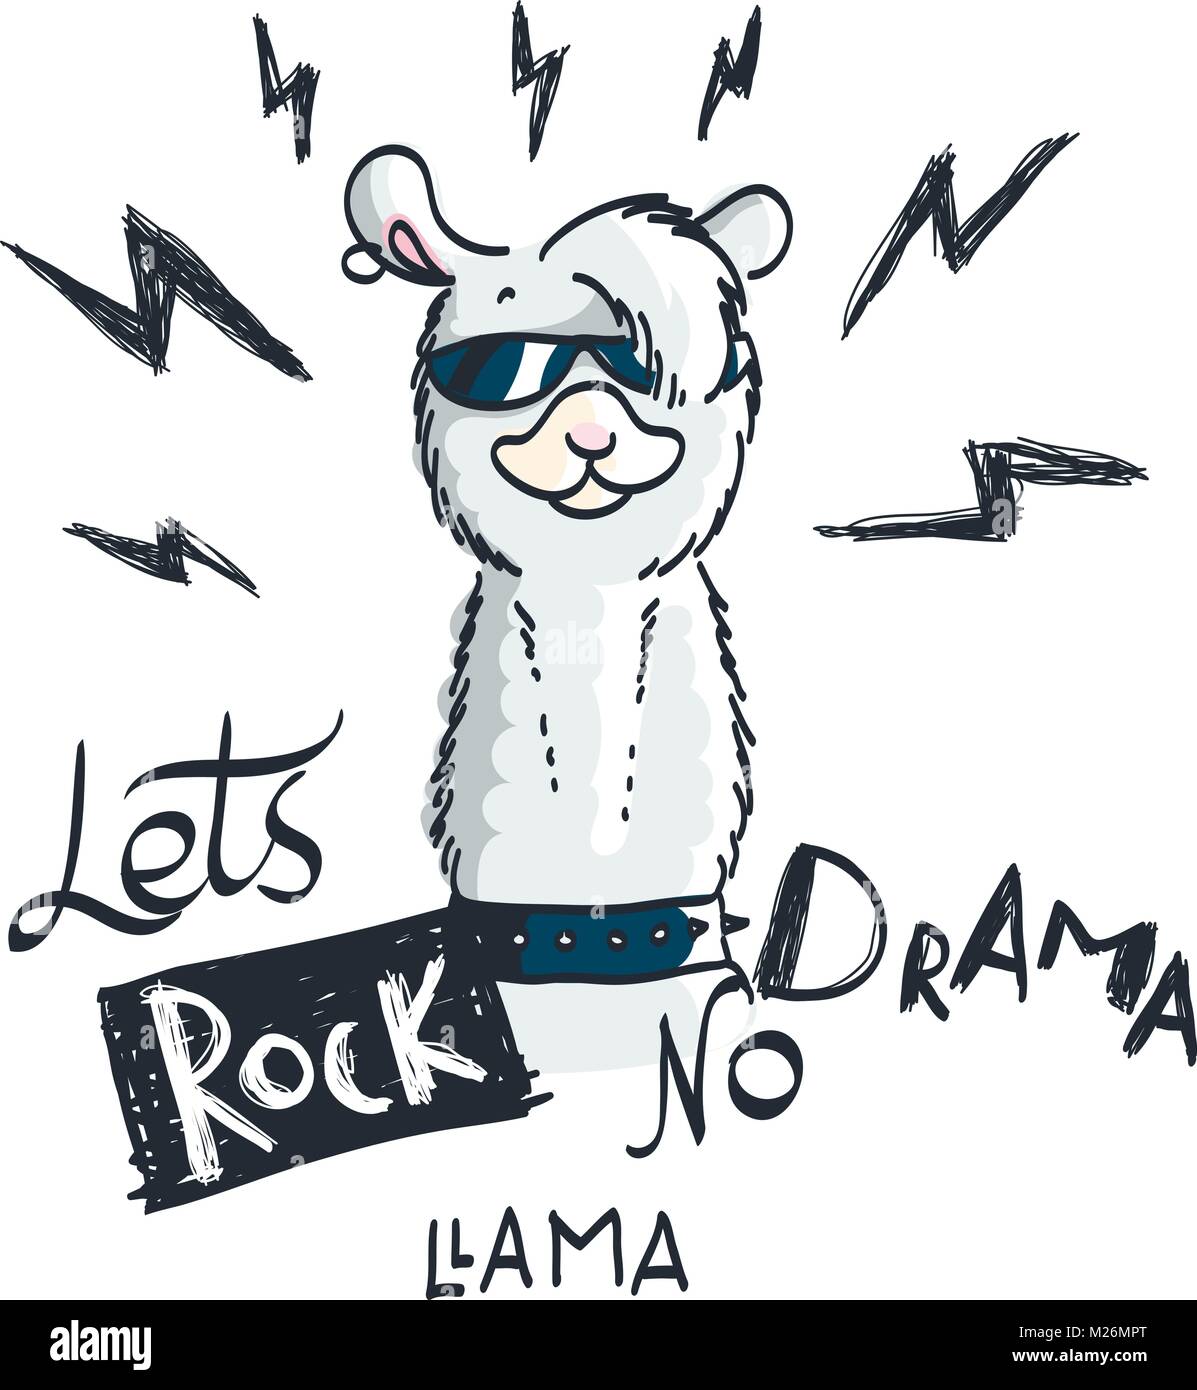 Carte cartoon Cute avec lama. Citation motivation et d'inspiration. Le gribouillage illustration. Lets rock, pas de drame, le lama Illustration de Vecteur